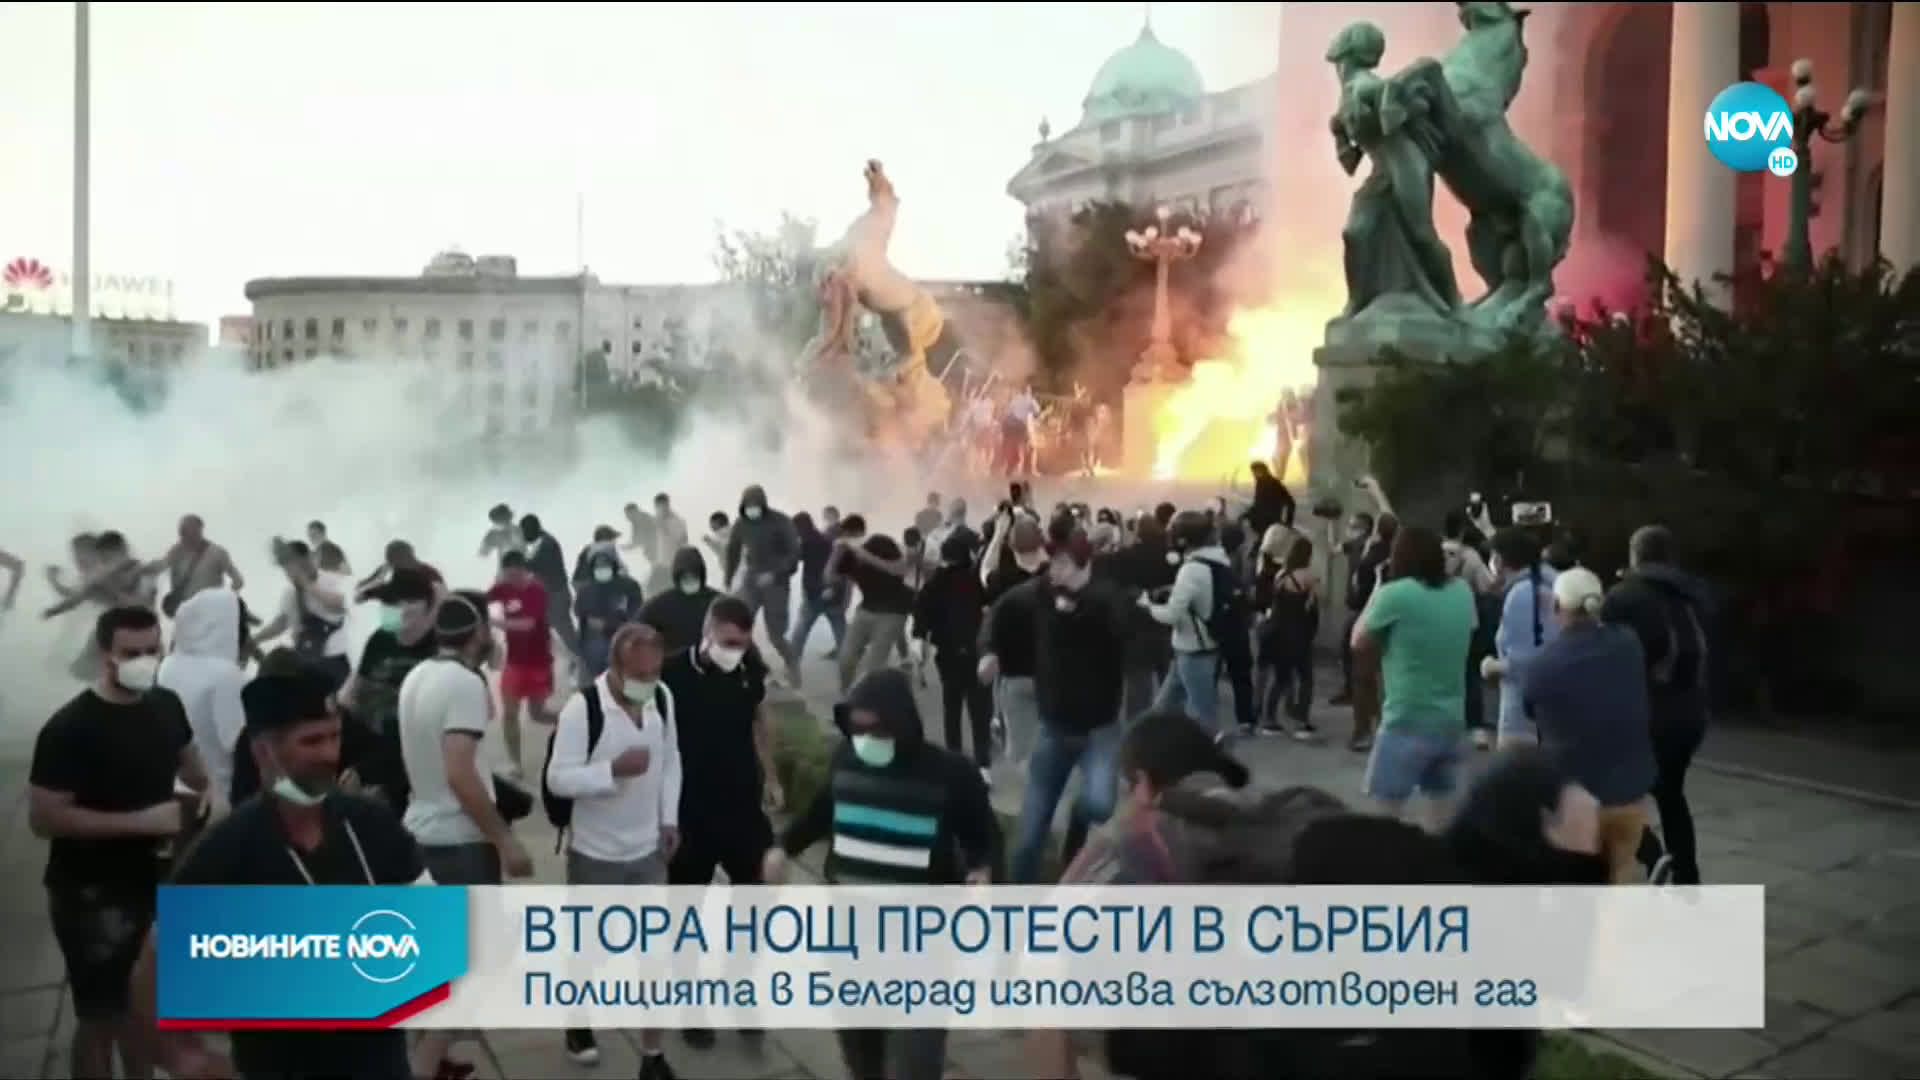 ВТОРА НОЩ ПРОТЕСТИ В СЪРБИЯ: Полицията в Белград използва сълзотворен газ